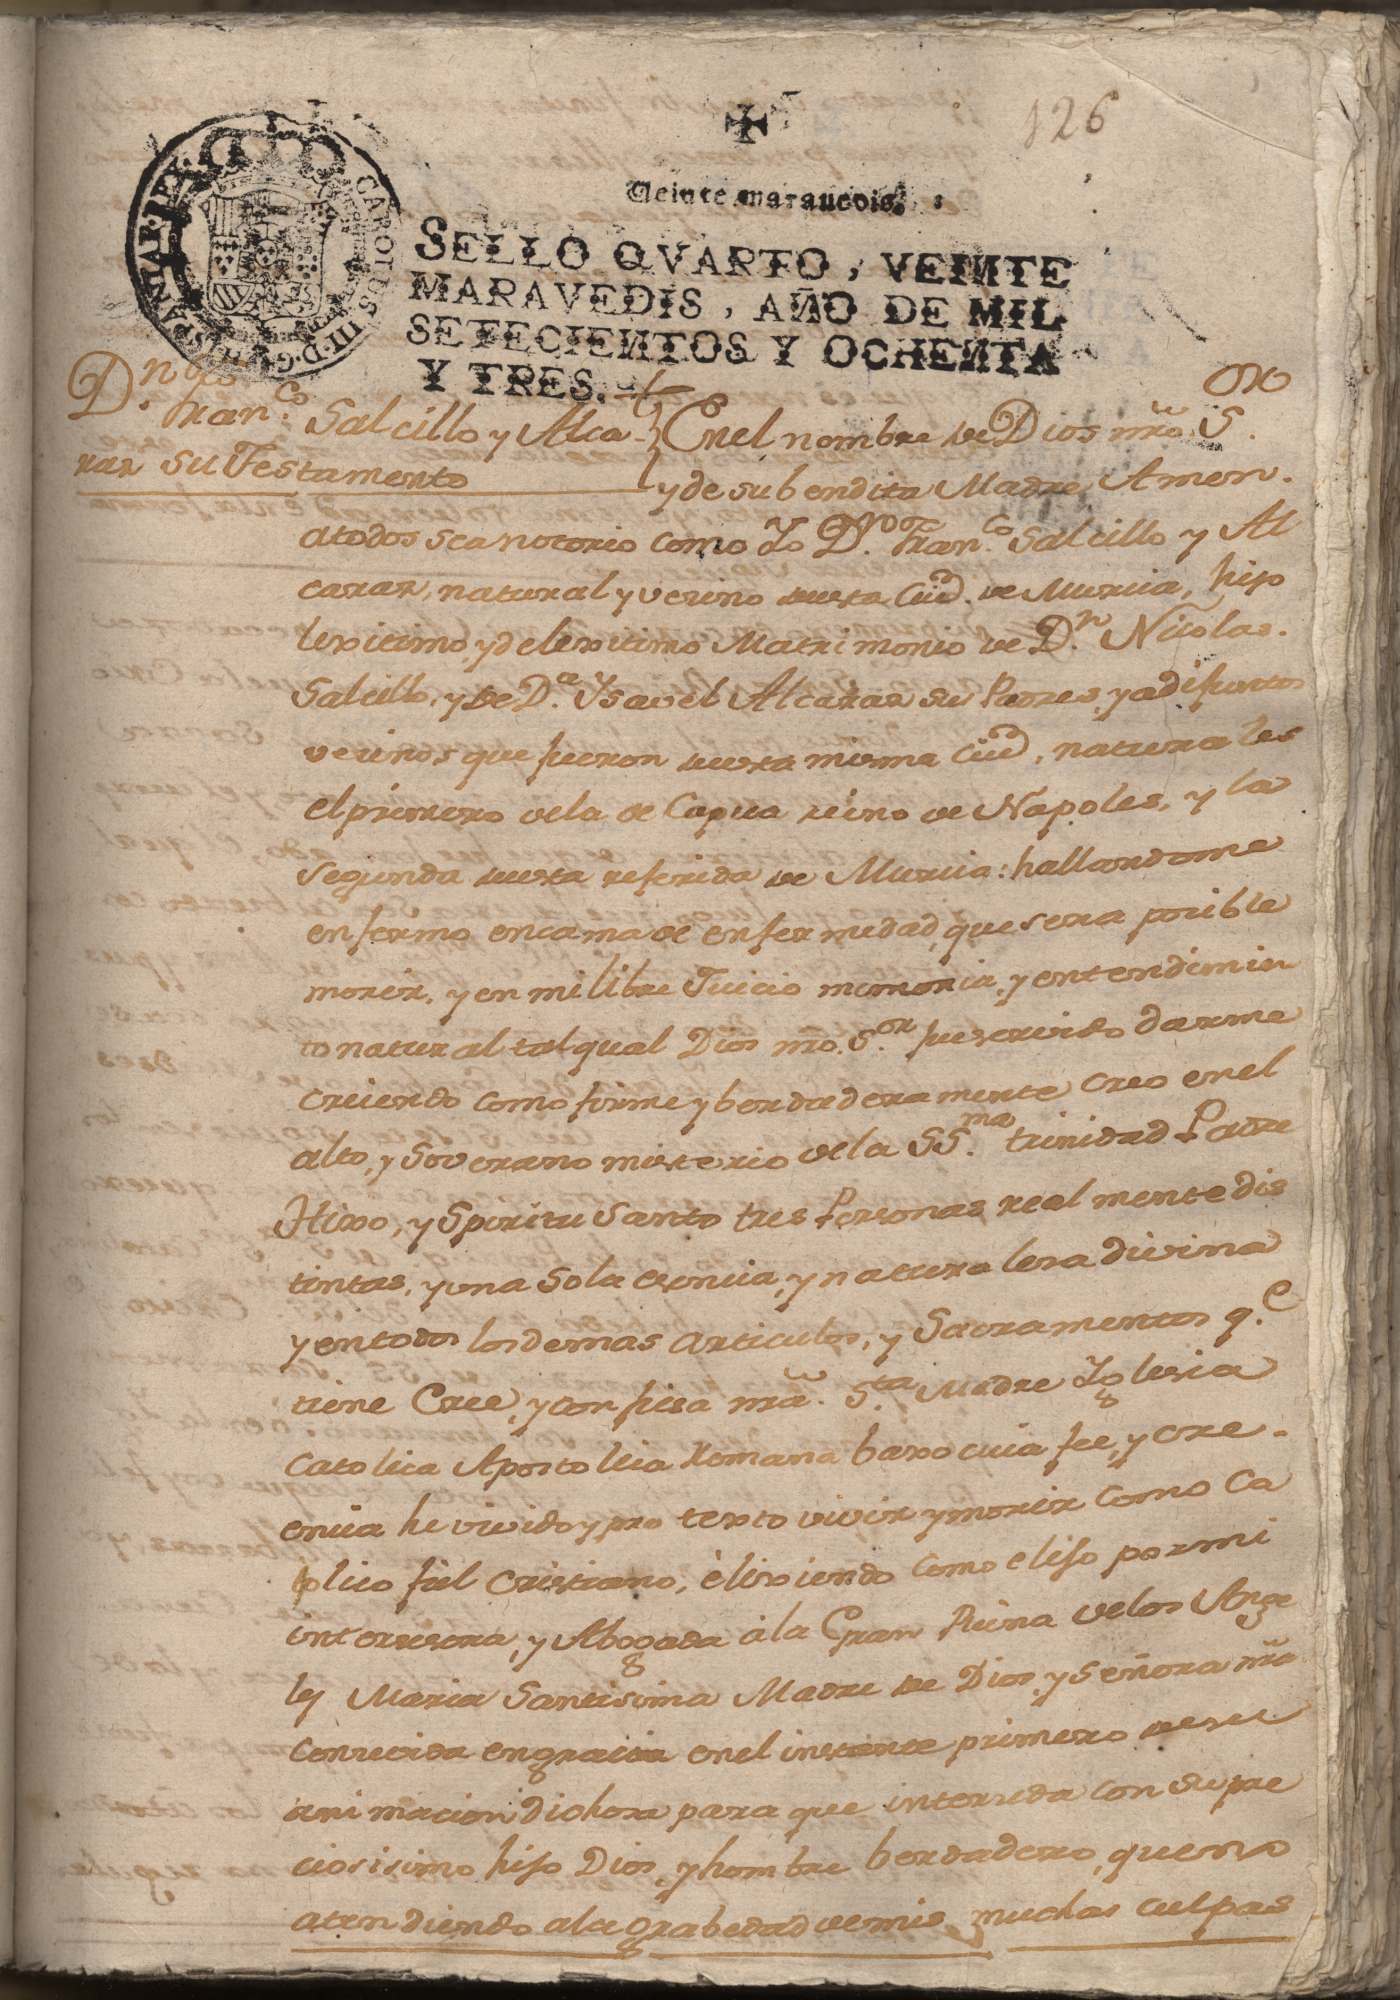 Testamento de Francisco Salzillo Alcaraz. Año 1783.